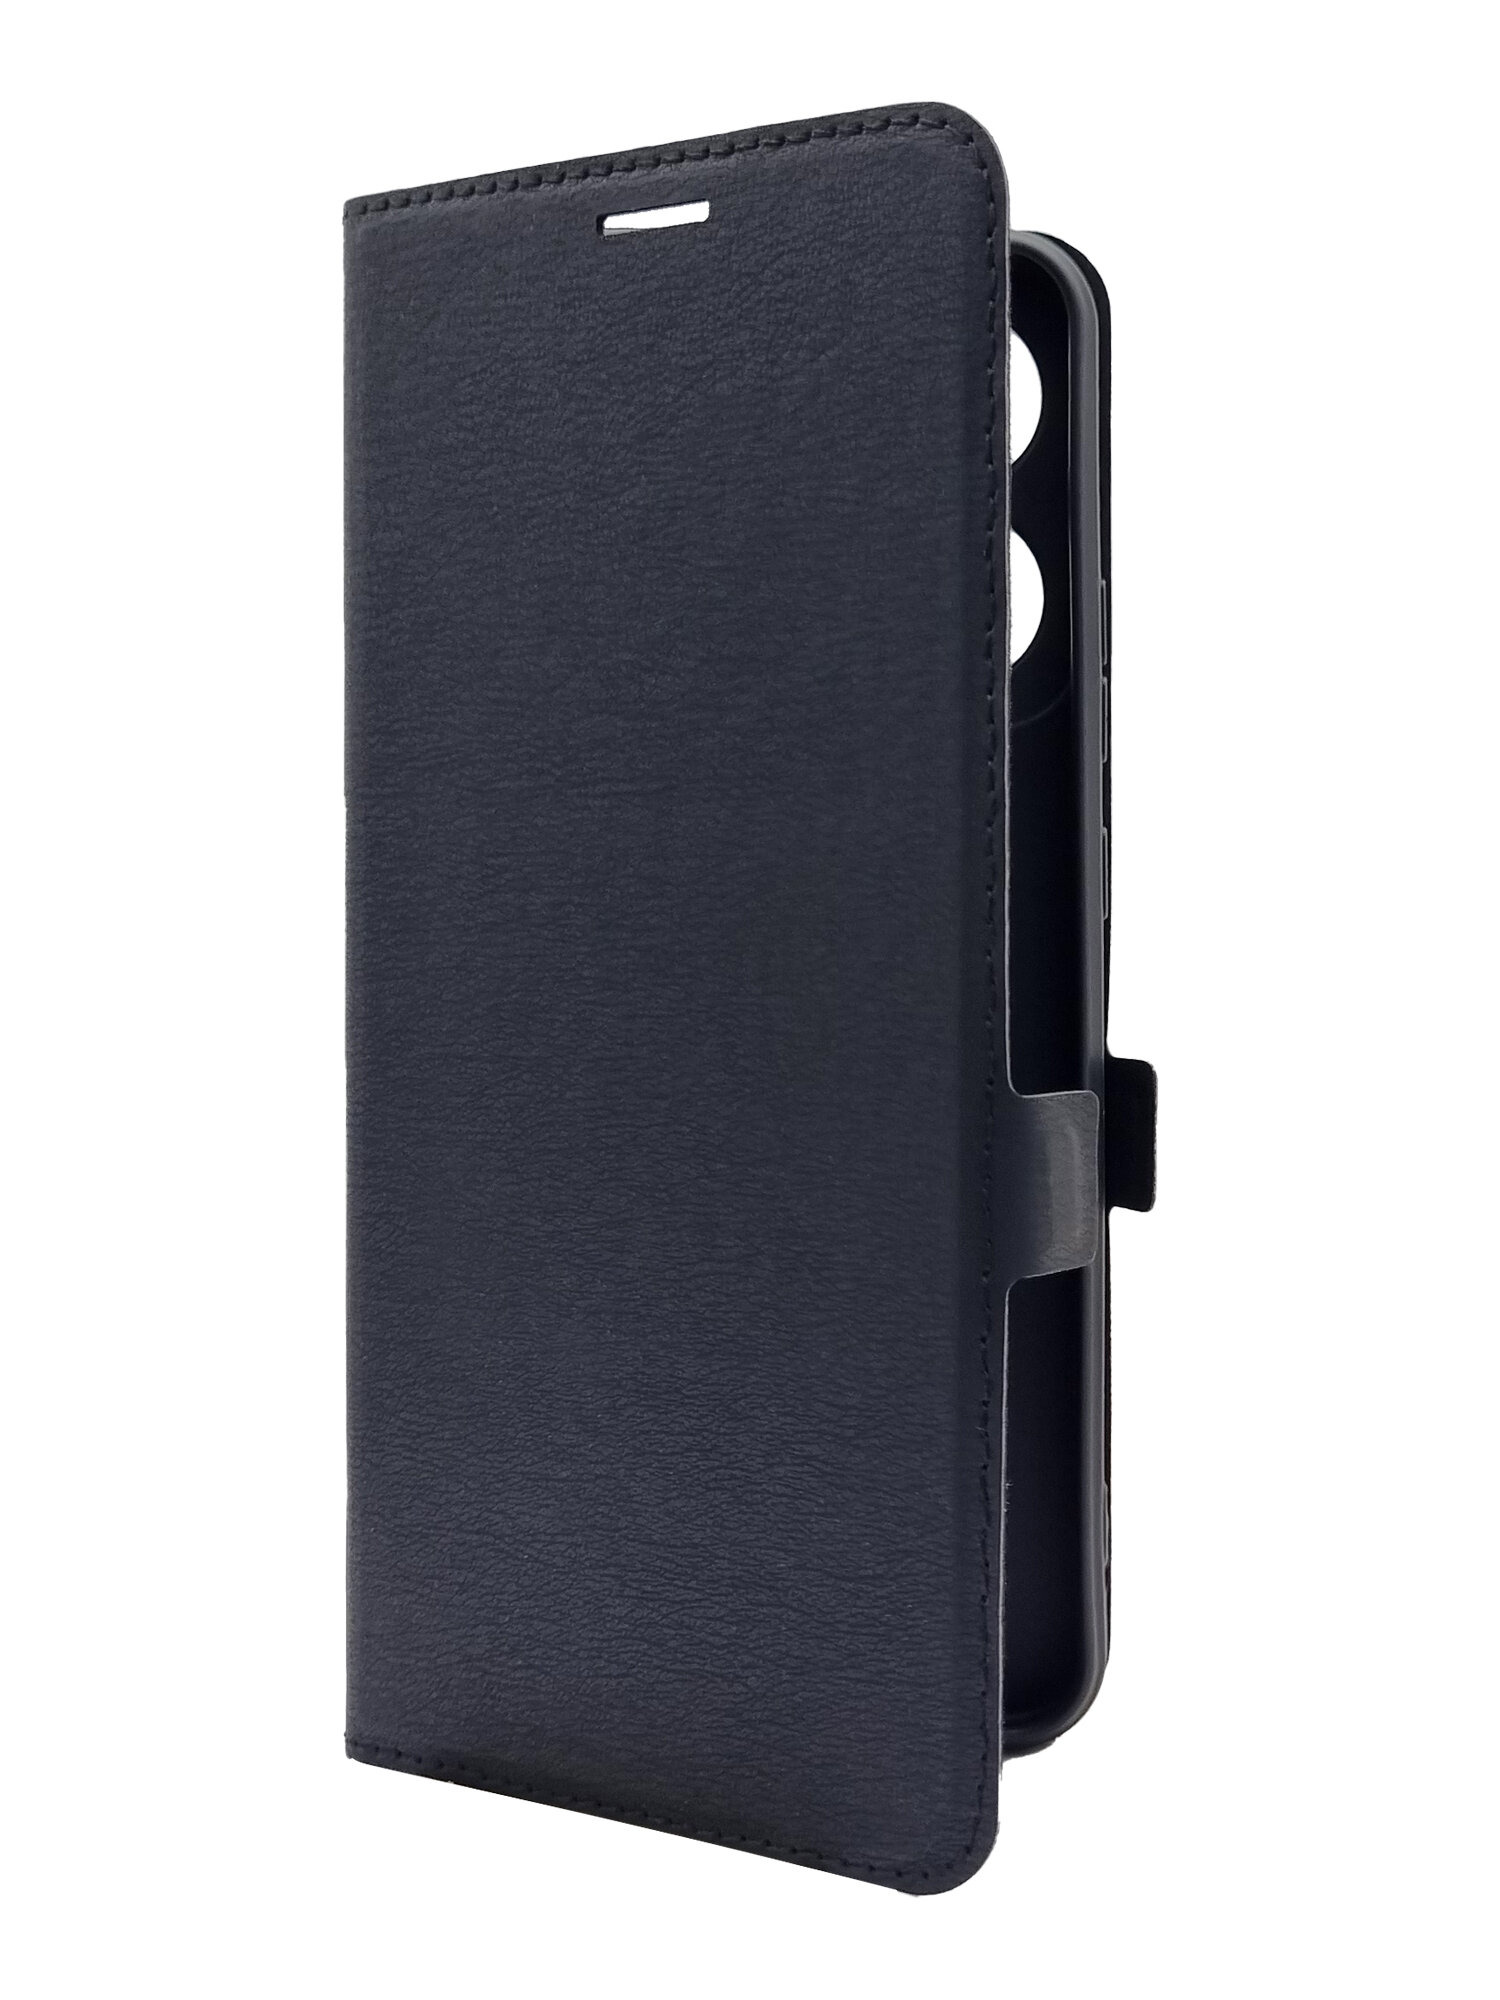 Чехол на Infinix Smart 7 Plus (Инфиникс Смарт 7+) черный книжка эко-кожа с функцией подставки отделением для карт и магнитами Book case, Brozo